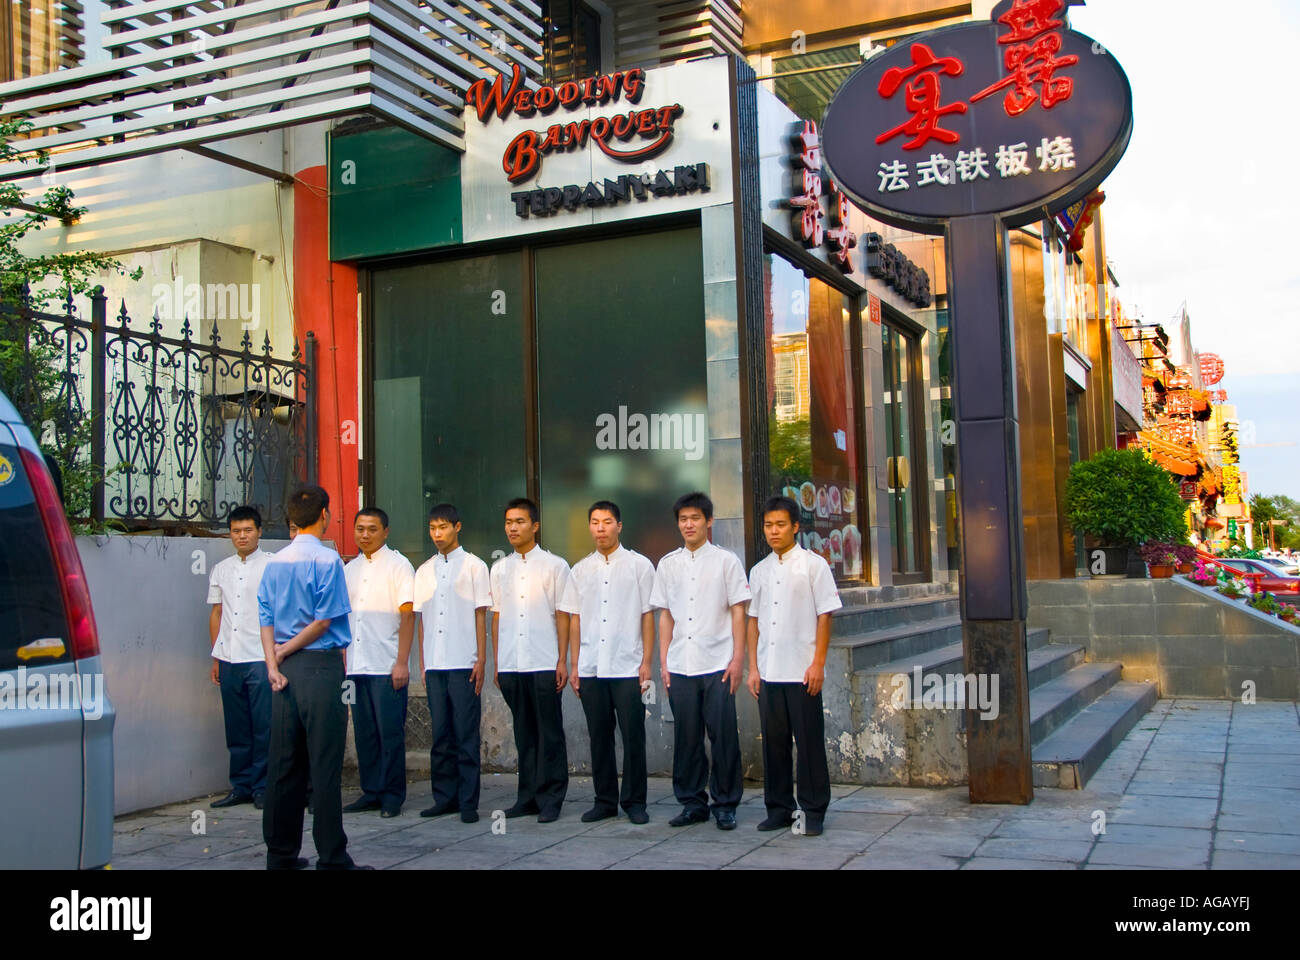 Lama chinese restaurant kuchai Chinese Restaurants